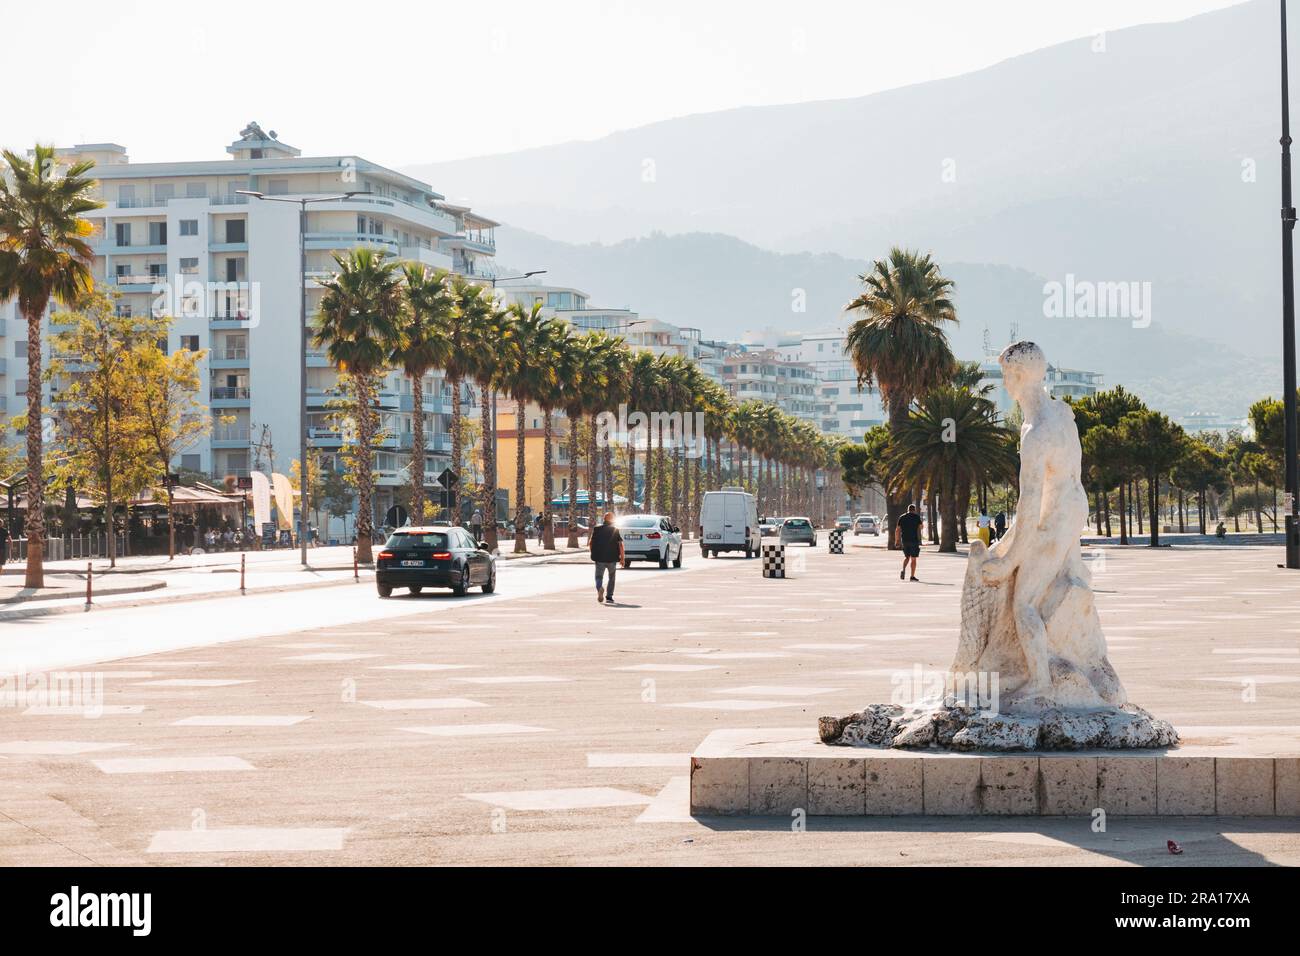 Una statua di un pescatore in una piazza nella città costiera di Vlorë, nel sud dell'Albania Foto Stock